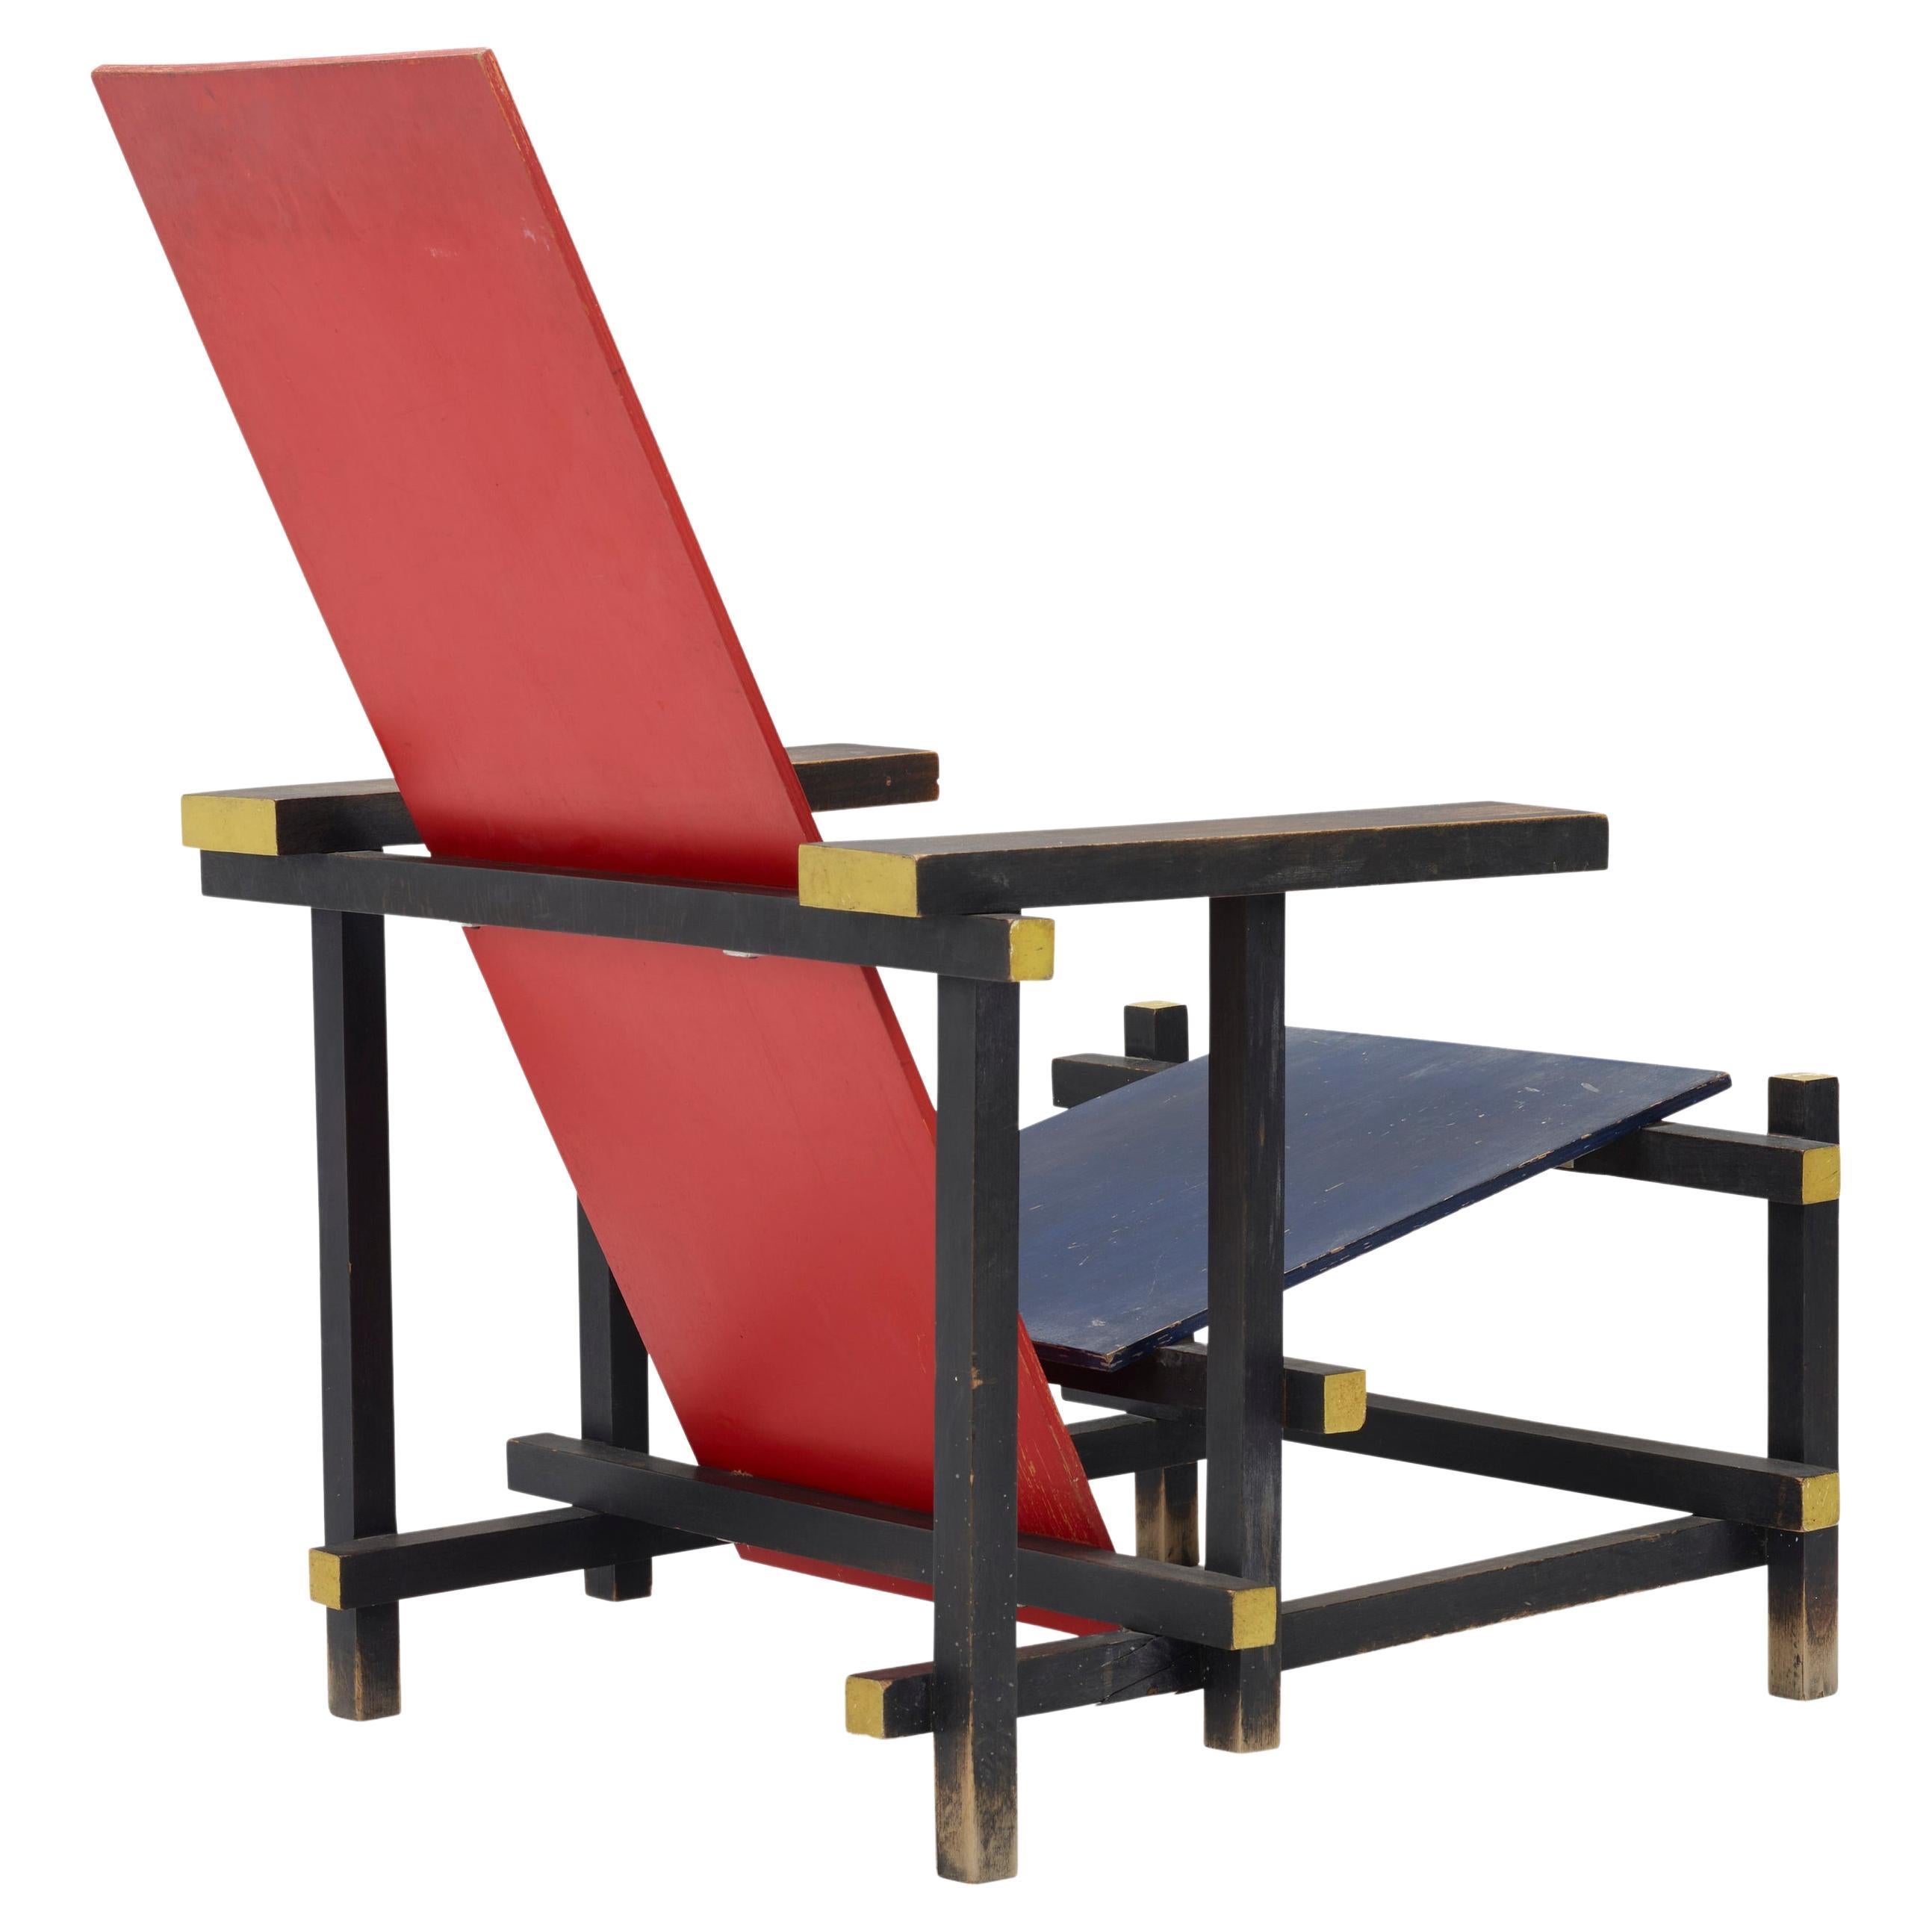 Gerrit Rietveld, chaise rouge et bleue / Authentique chaise